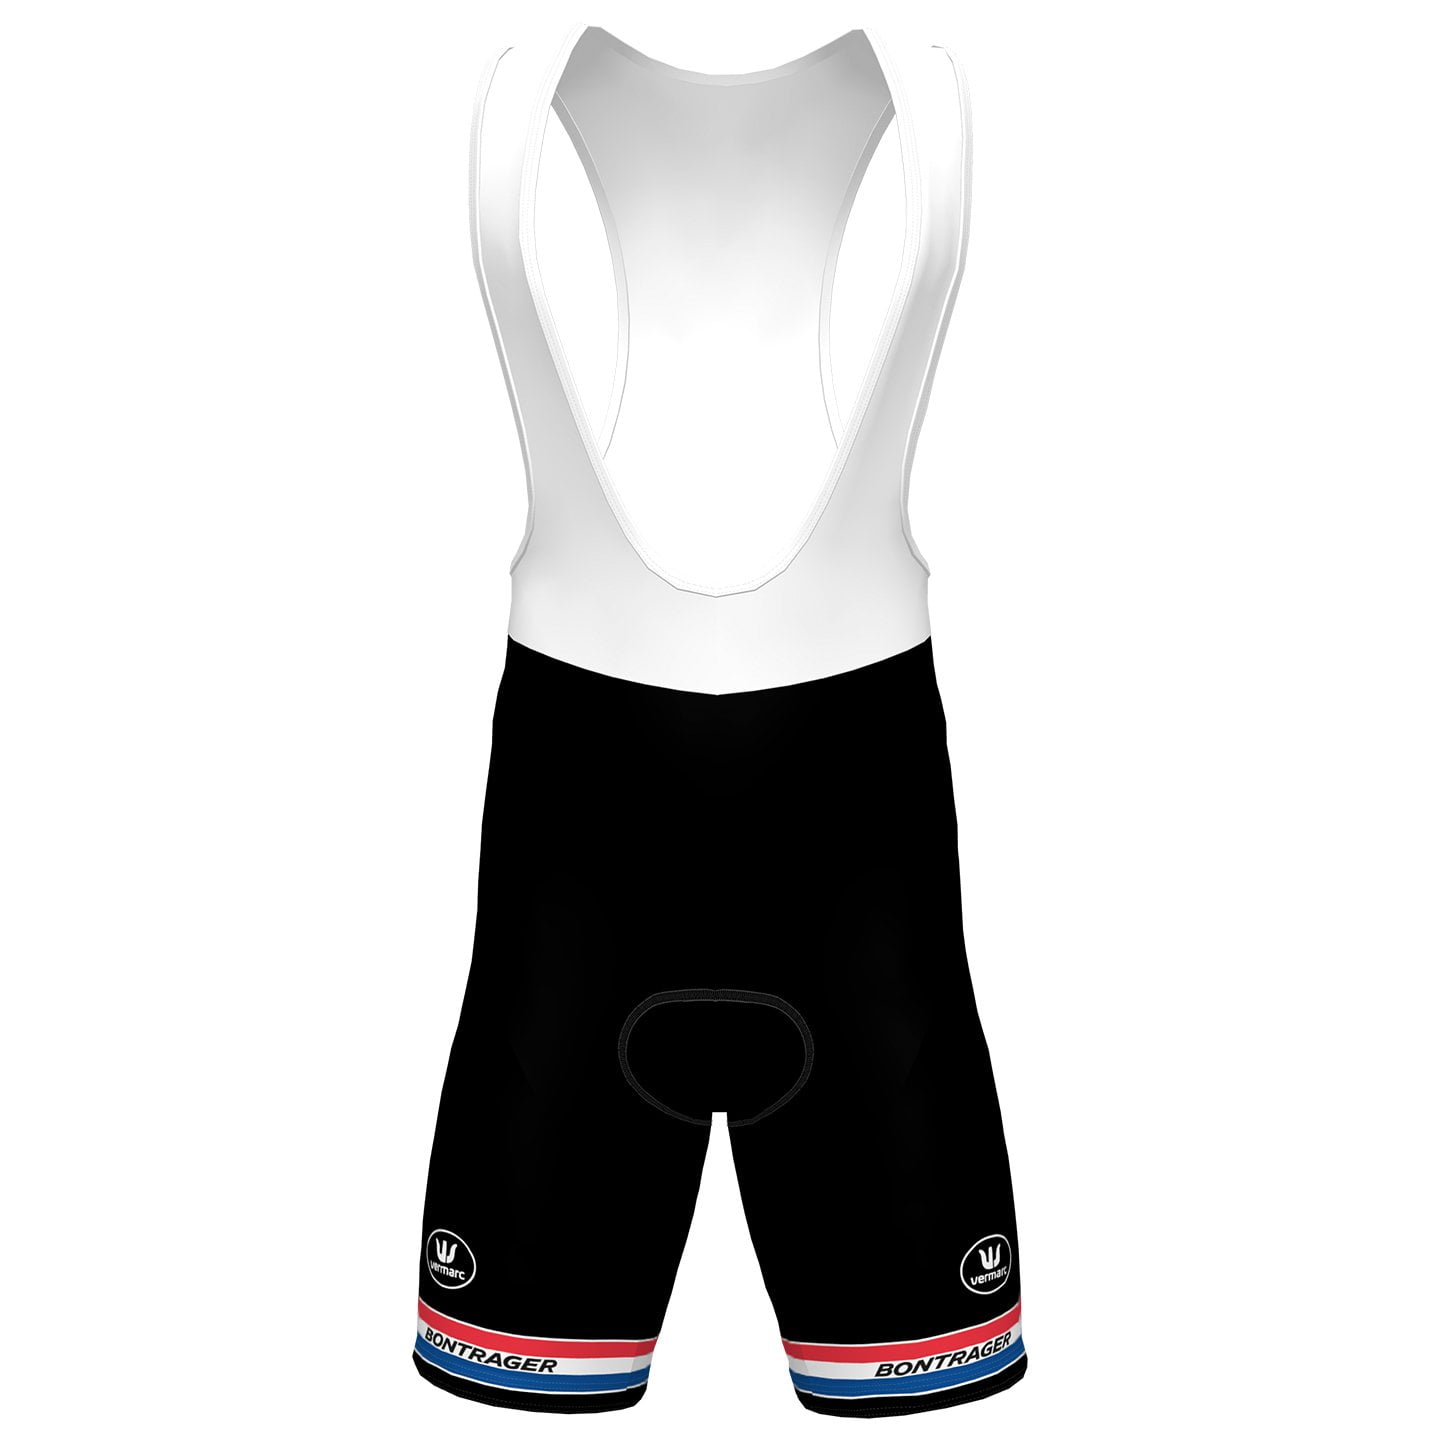 BALOISE TREK LIONS Bib Shorts Dutch Champion 2023, for men, size 2XL, Cycle trousers, Cycle gear